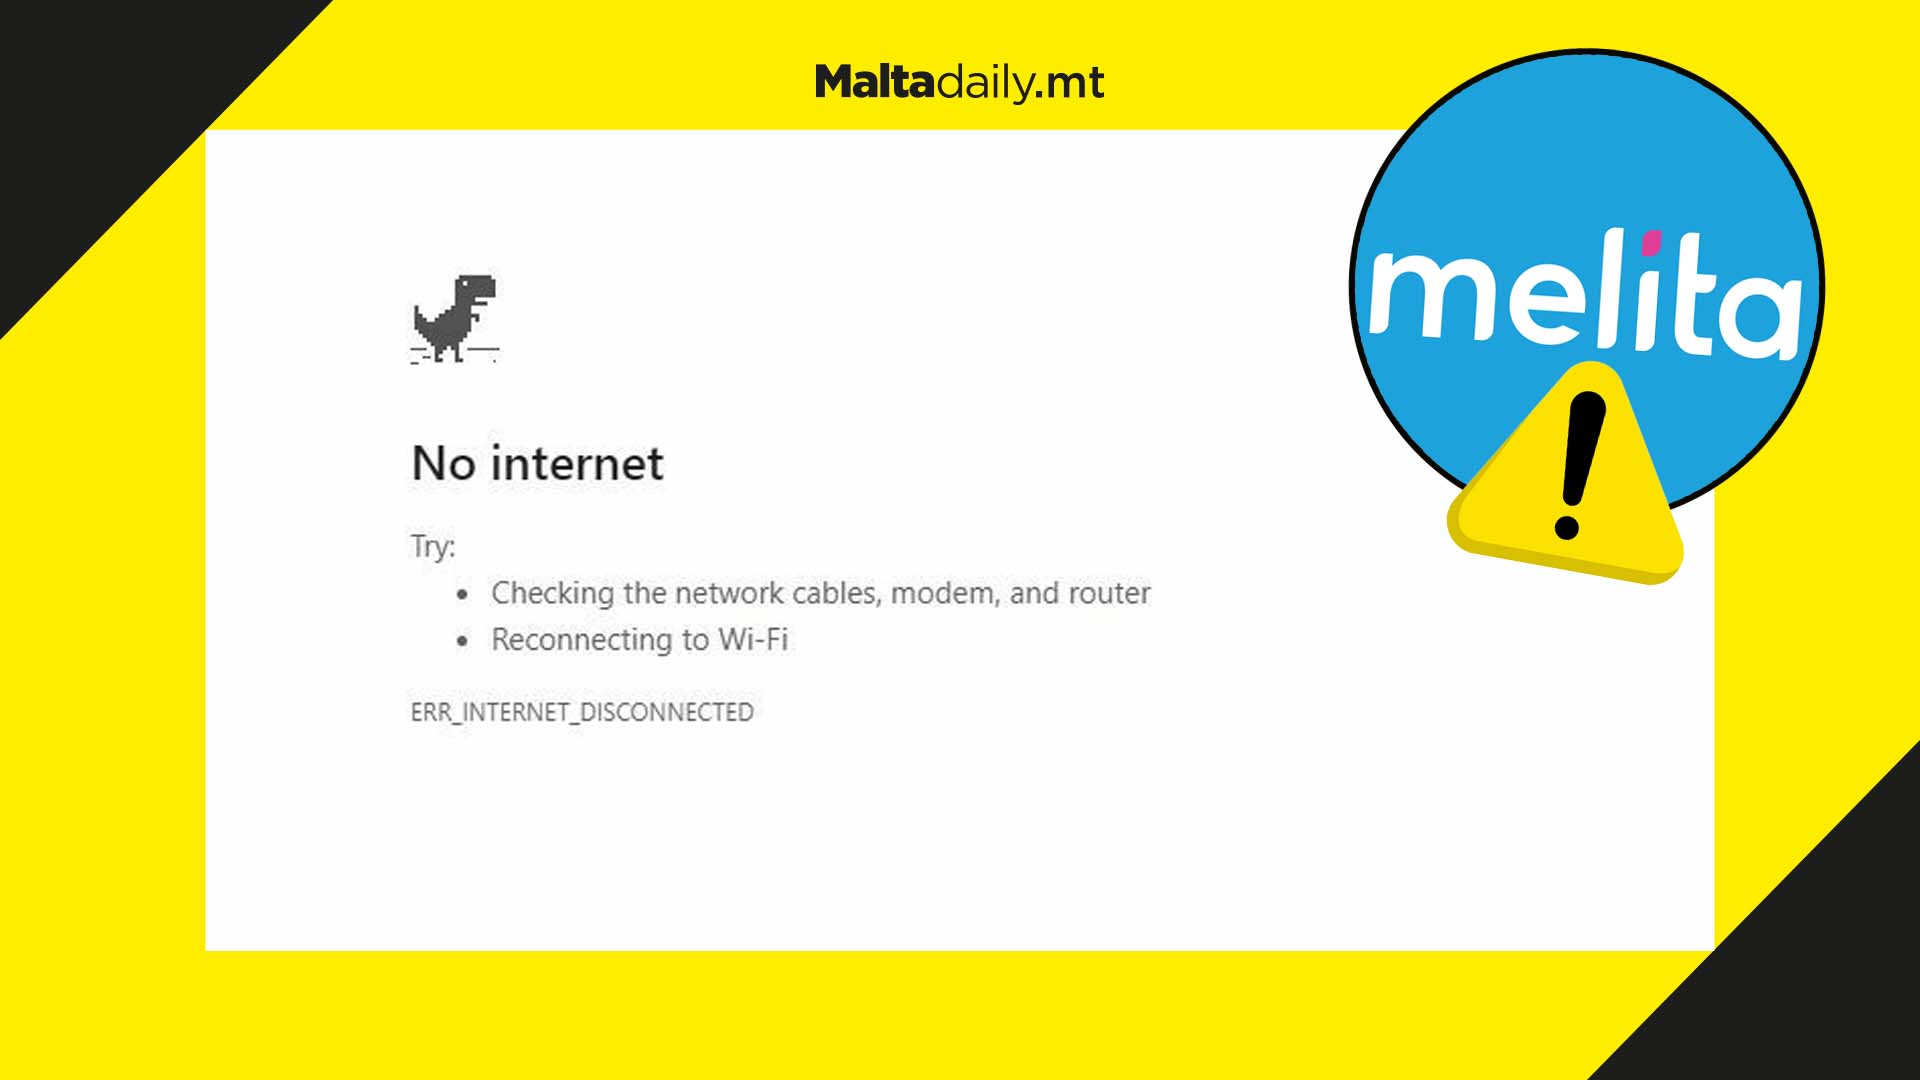 Melita fibre cable damage cuts internet service in south of Malta